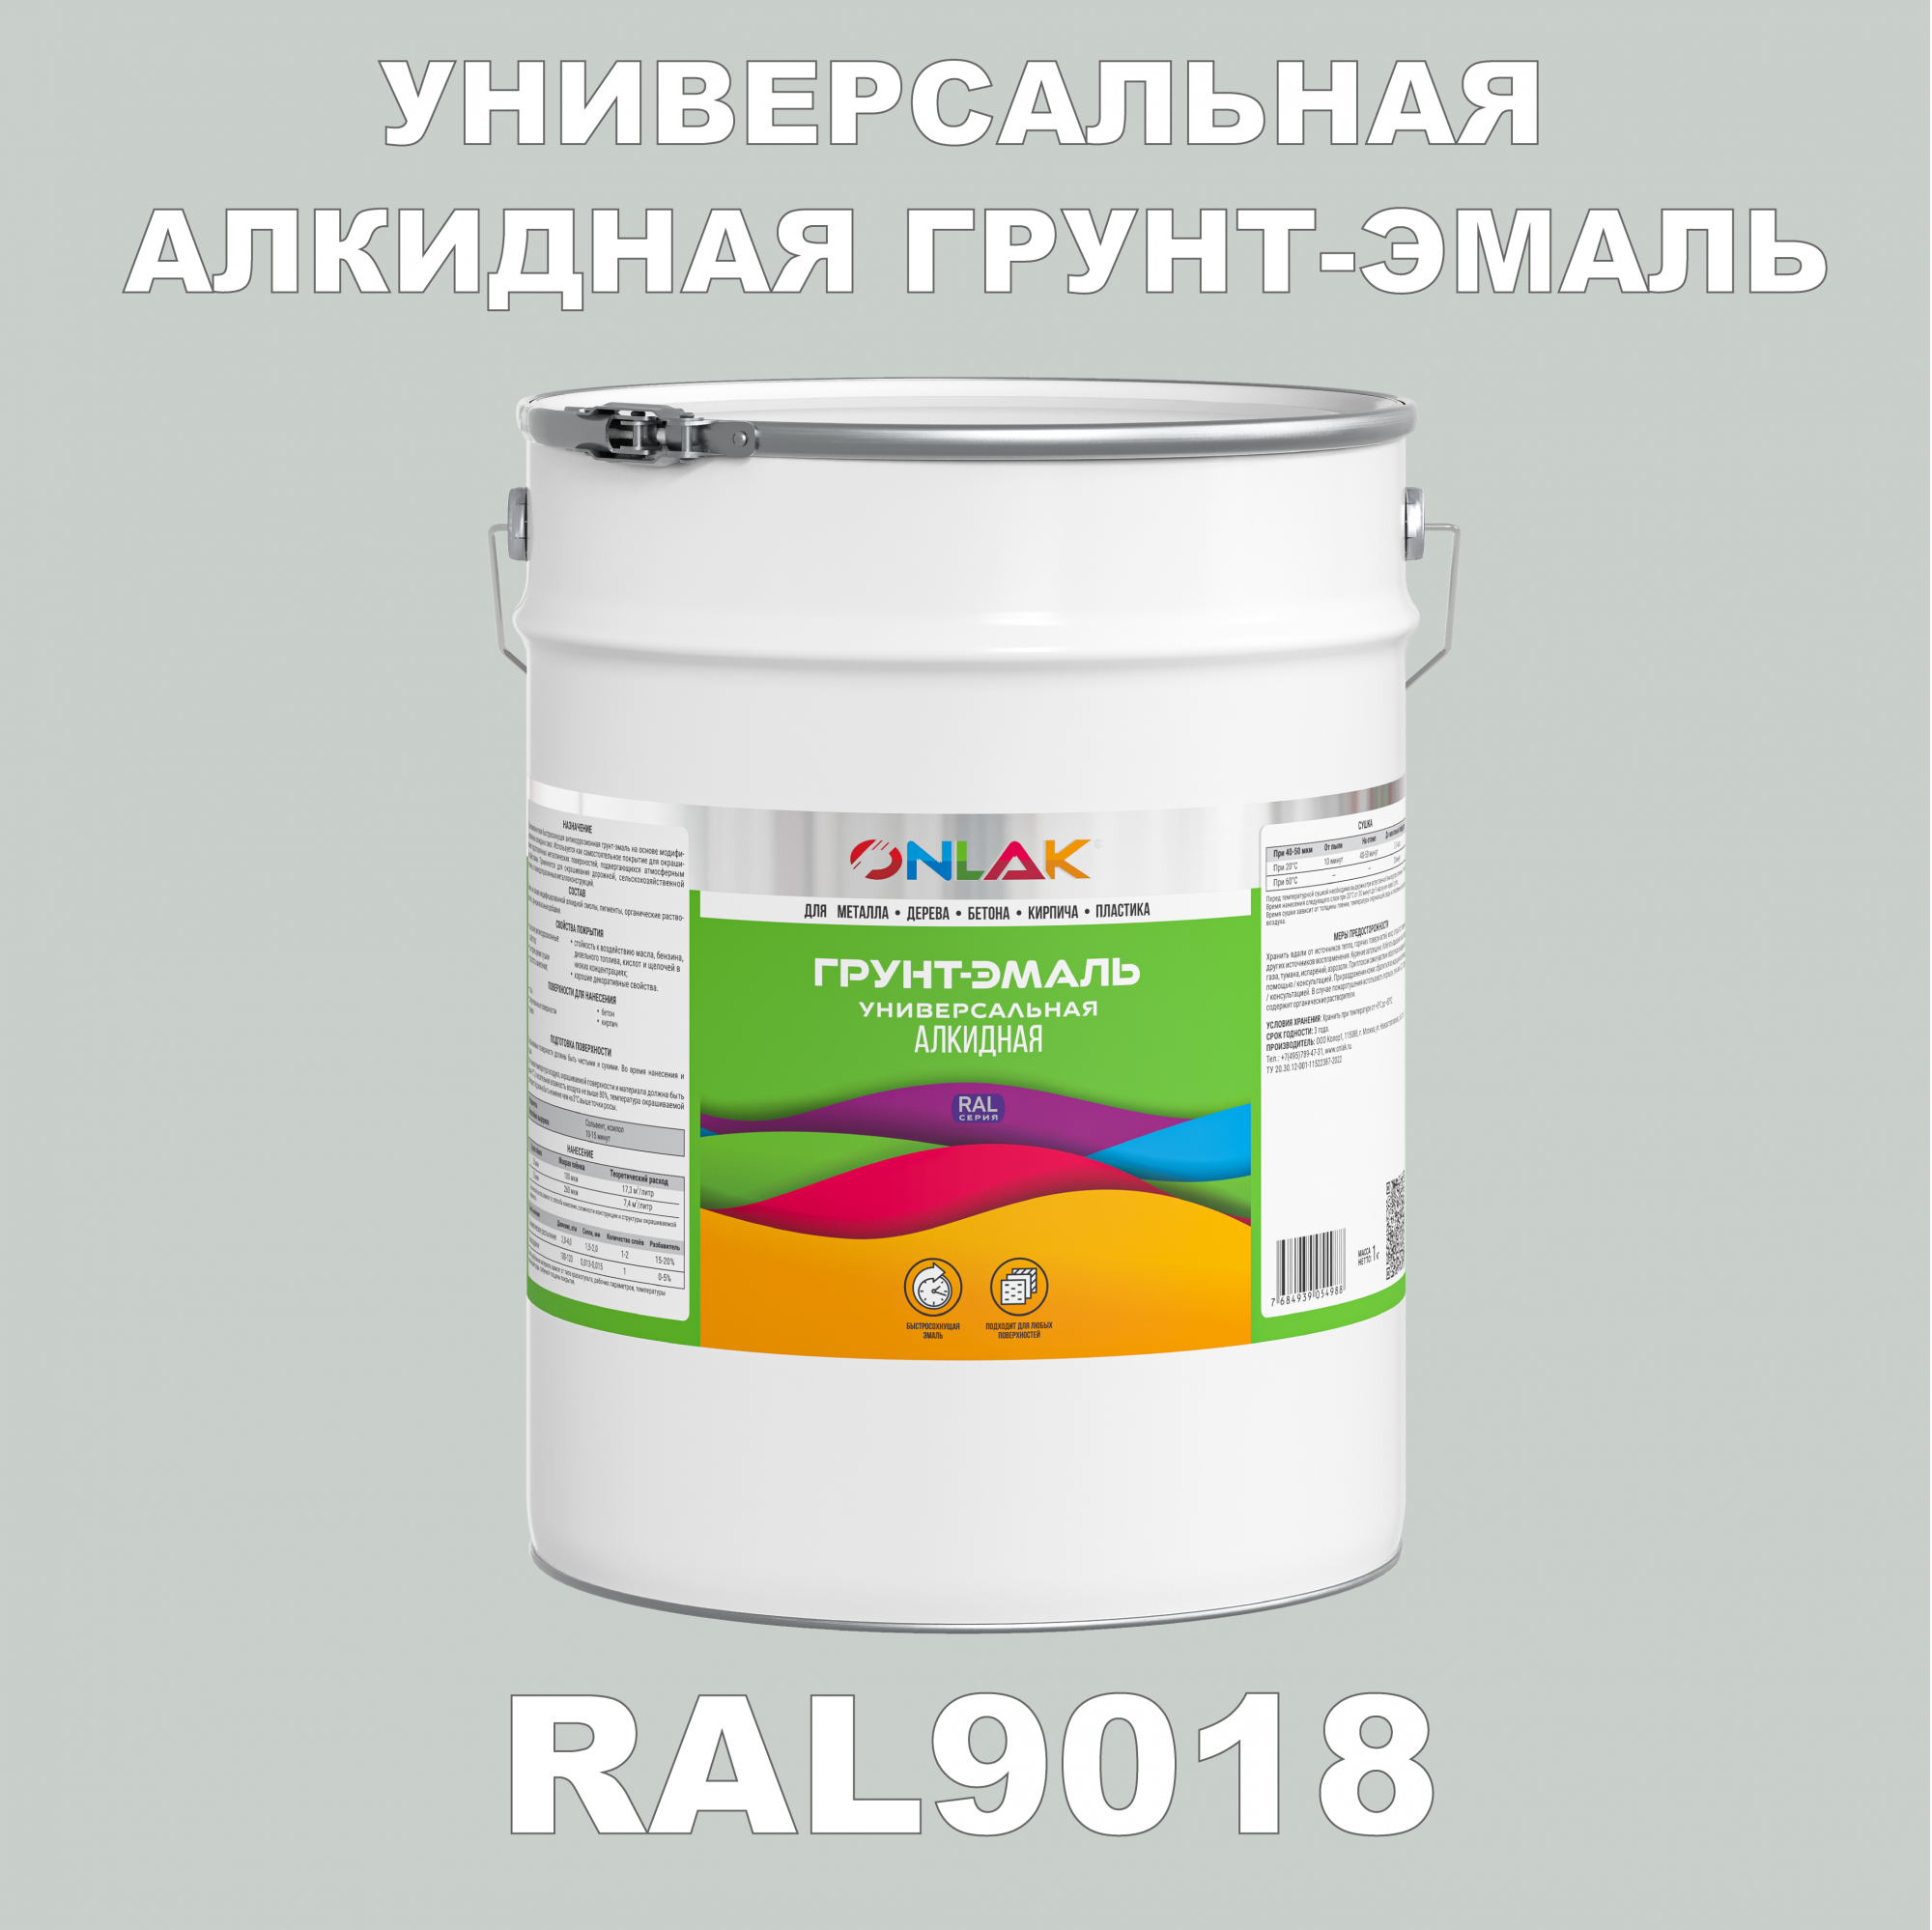 Грунт-эмаль ONLAK 1К RAL9018 антикоррозионная алкидная по металлу по ржавчине 20 кг грунт эмаль yollo по ржавчине алкидная серая 0 9 кг